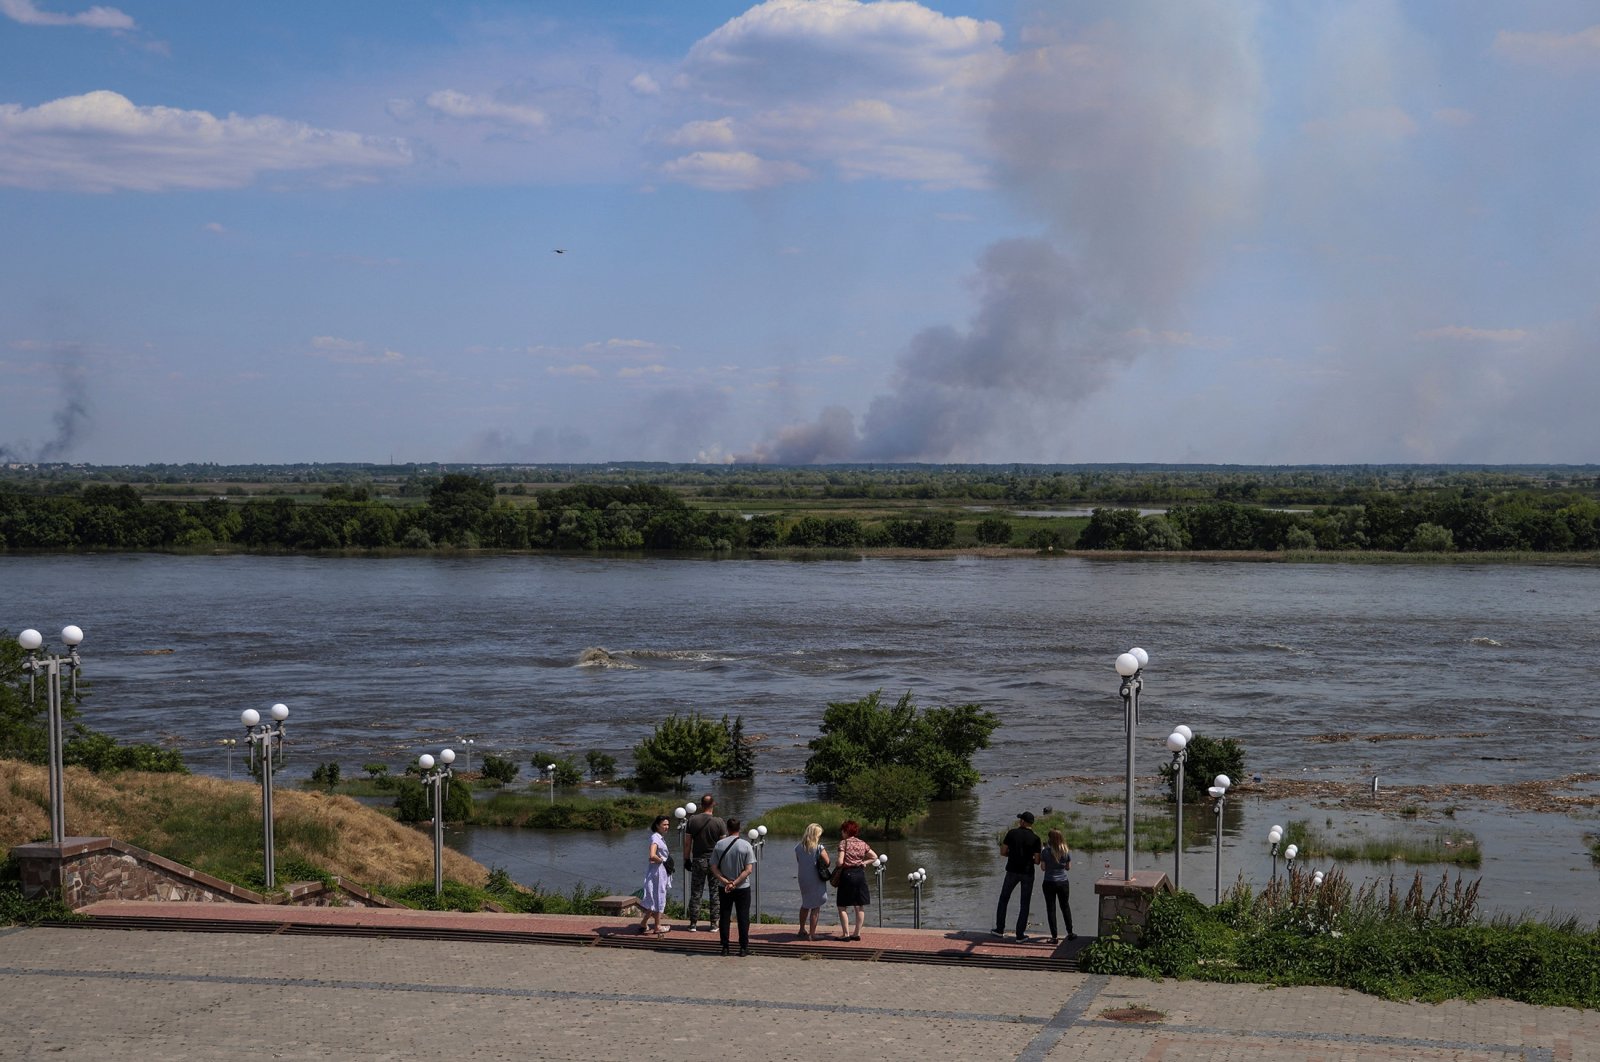 Ribuan dievakuasi, banyak lagi yang berisiko dalam krisis bendungan Ukraina: PBB